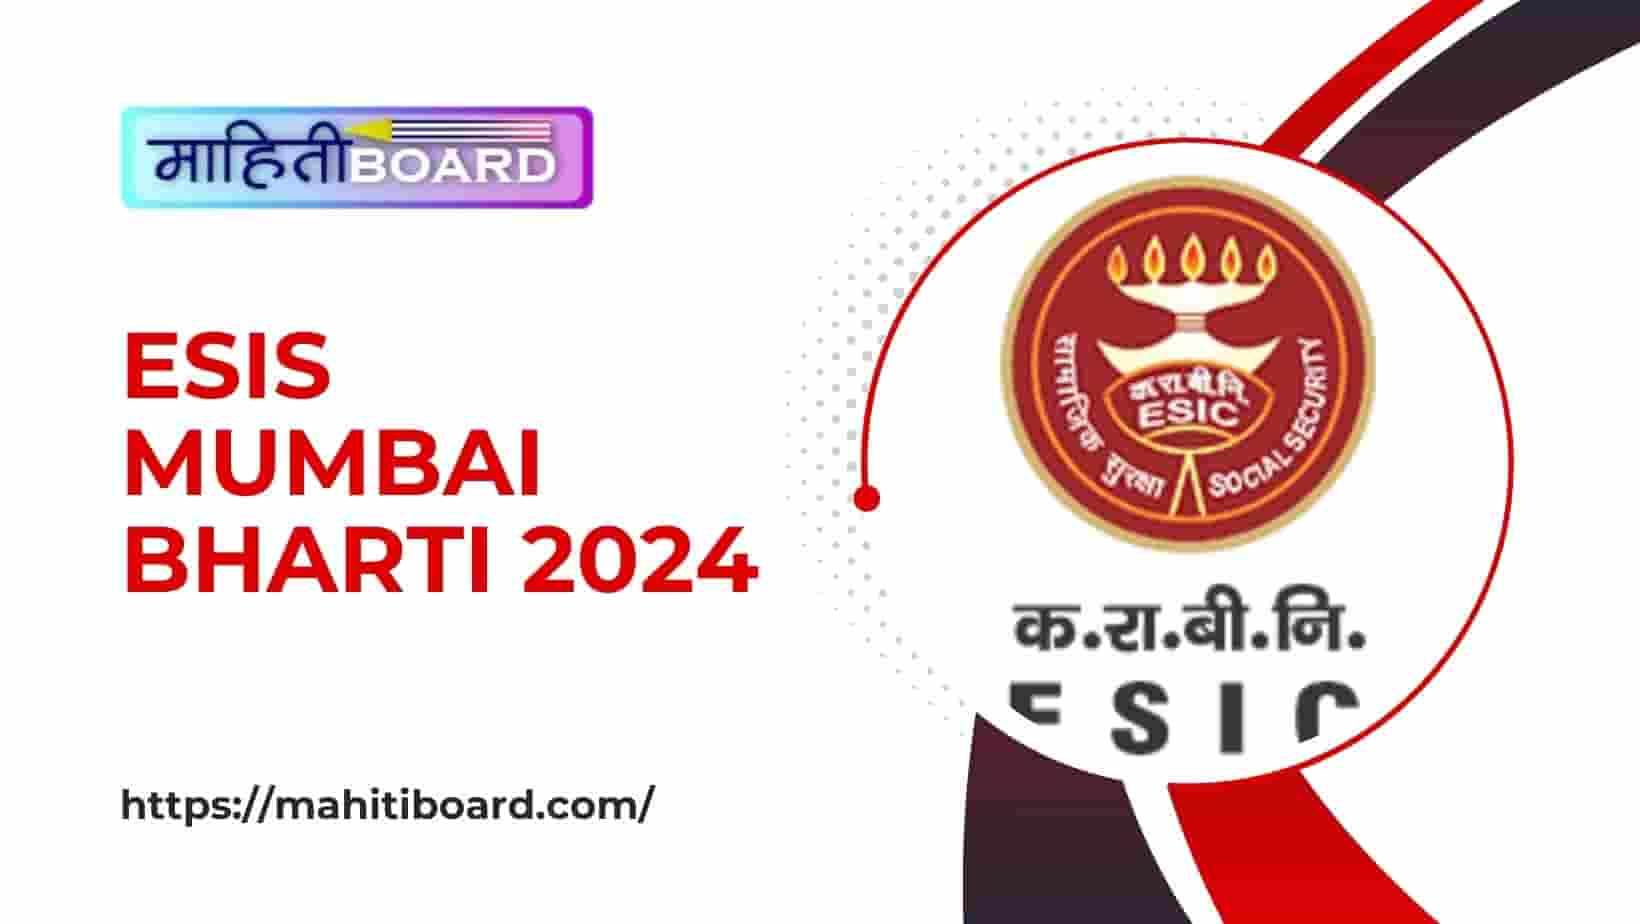 ESIS Mumbai Bharti 2024